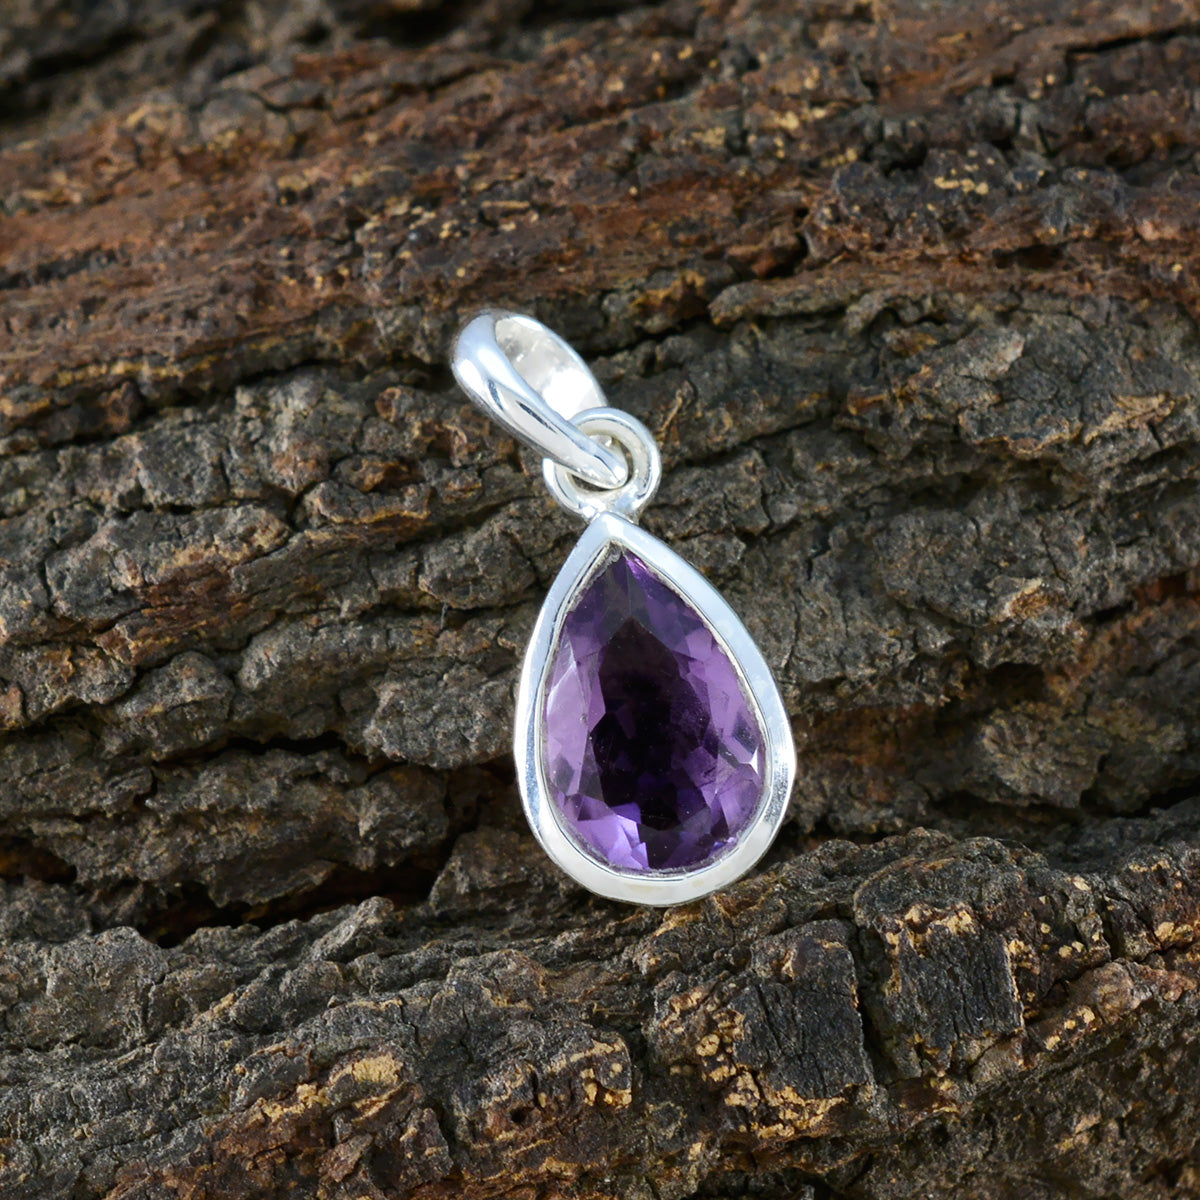 Riyo belles pierres précieuses poire à facettes violet améthyste pendentif en argent cadeau pour femme